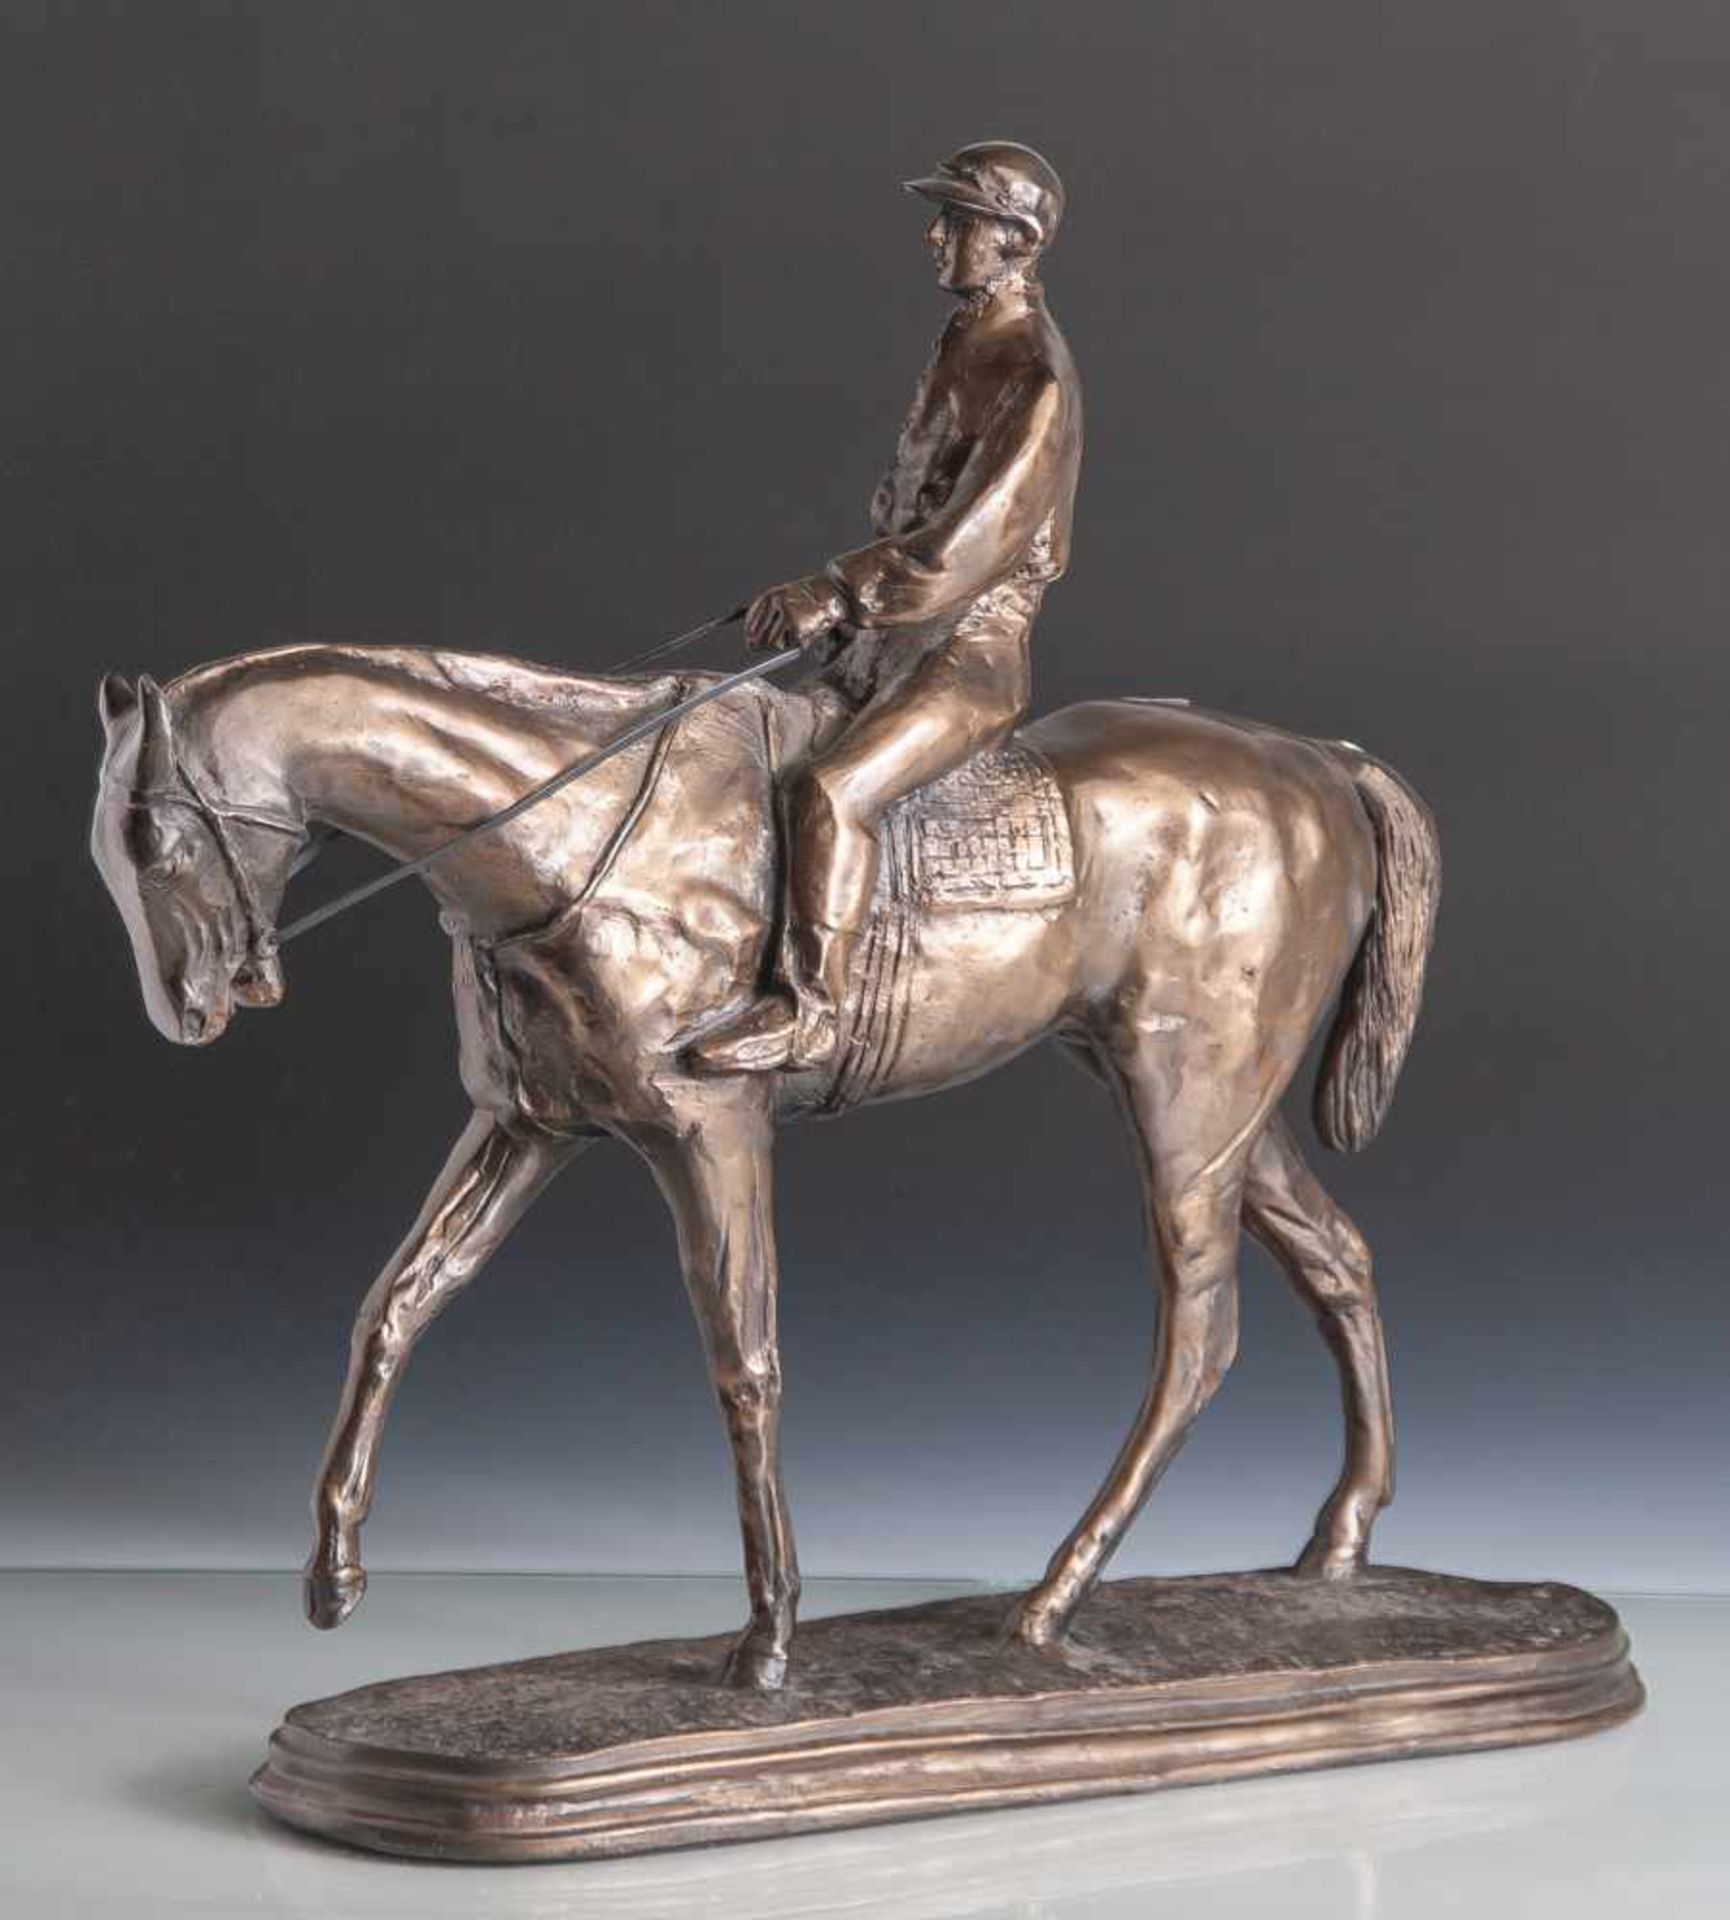 Tupton, V. (20. Jahrhundert), Jockey auf Rennpferd, Masseguss, dunkel patiniert, auf dem Sockel